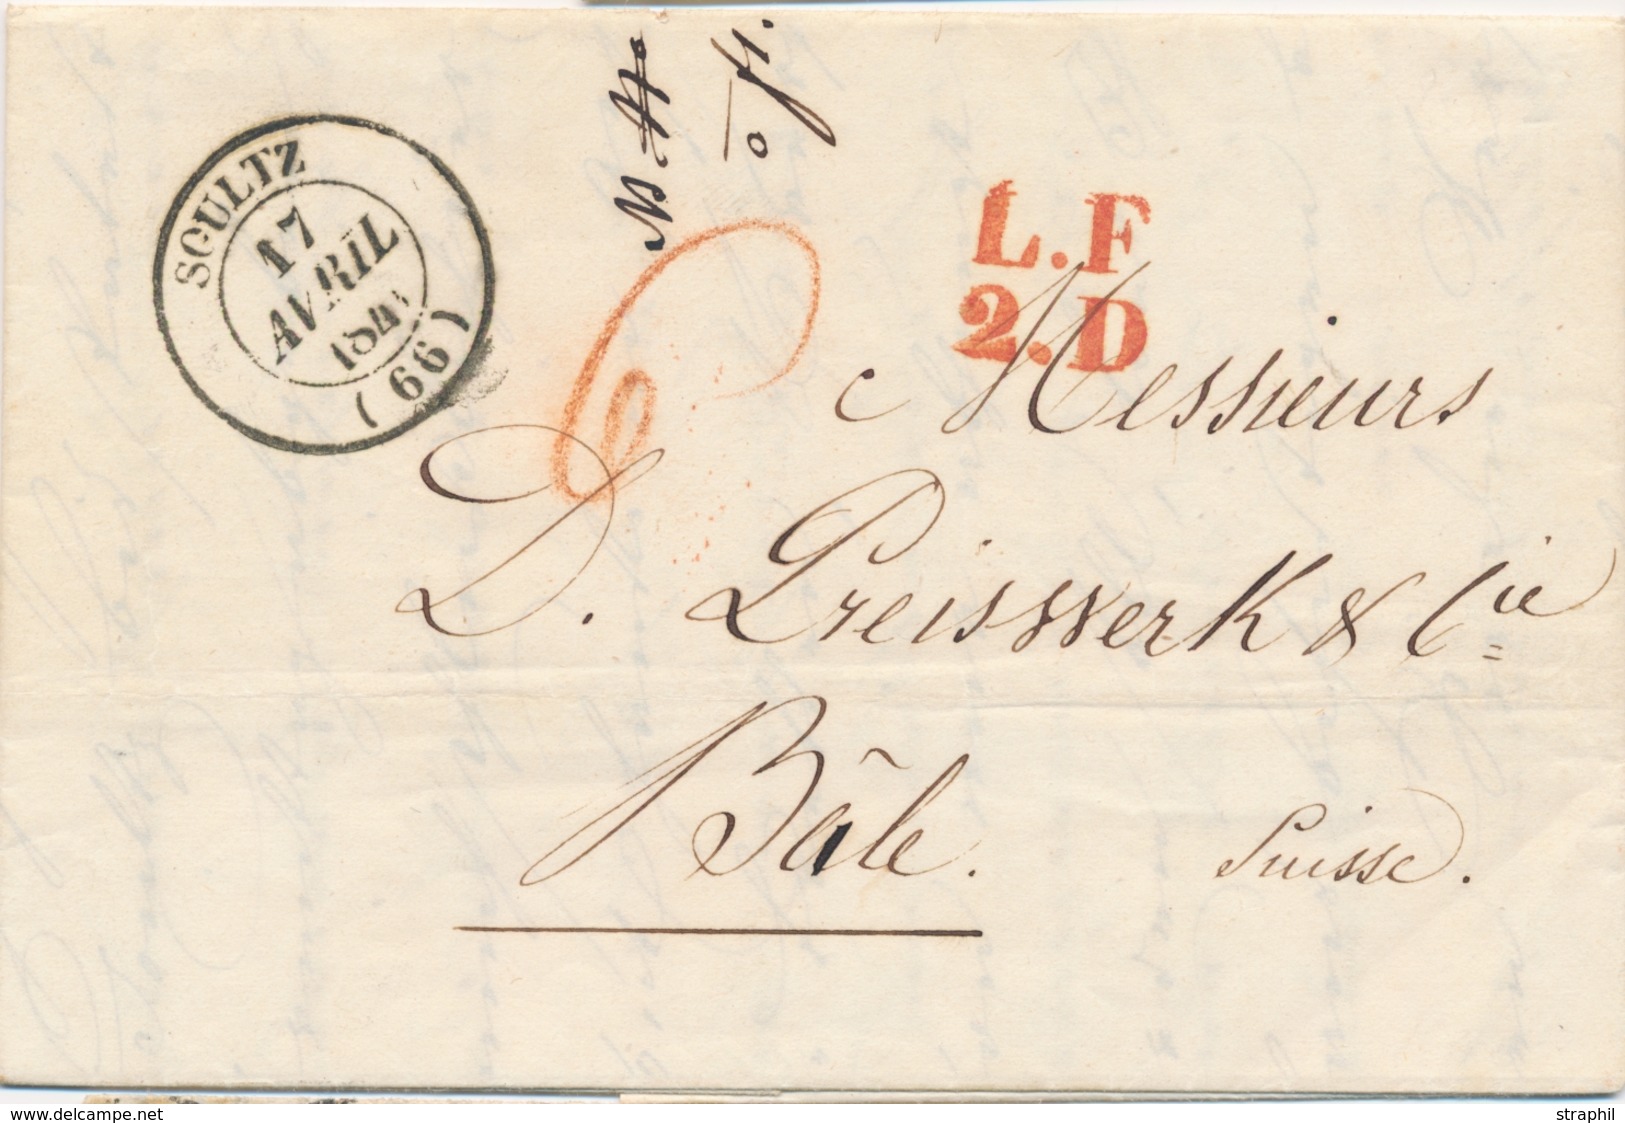 LAC M. POSTALES 19ème Siècle - HAUT-RHIN (Dépt 66) - LAC - Pli De #SOULTZ# - T14 - 17/4/1841 + Marque LF2D (Rge) - Pour  - Covers & Documents